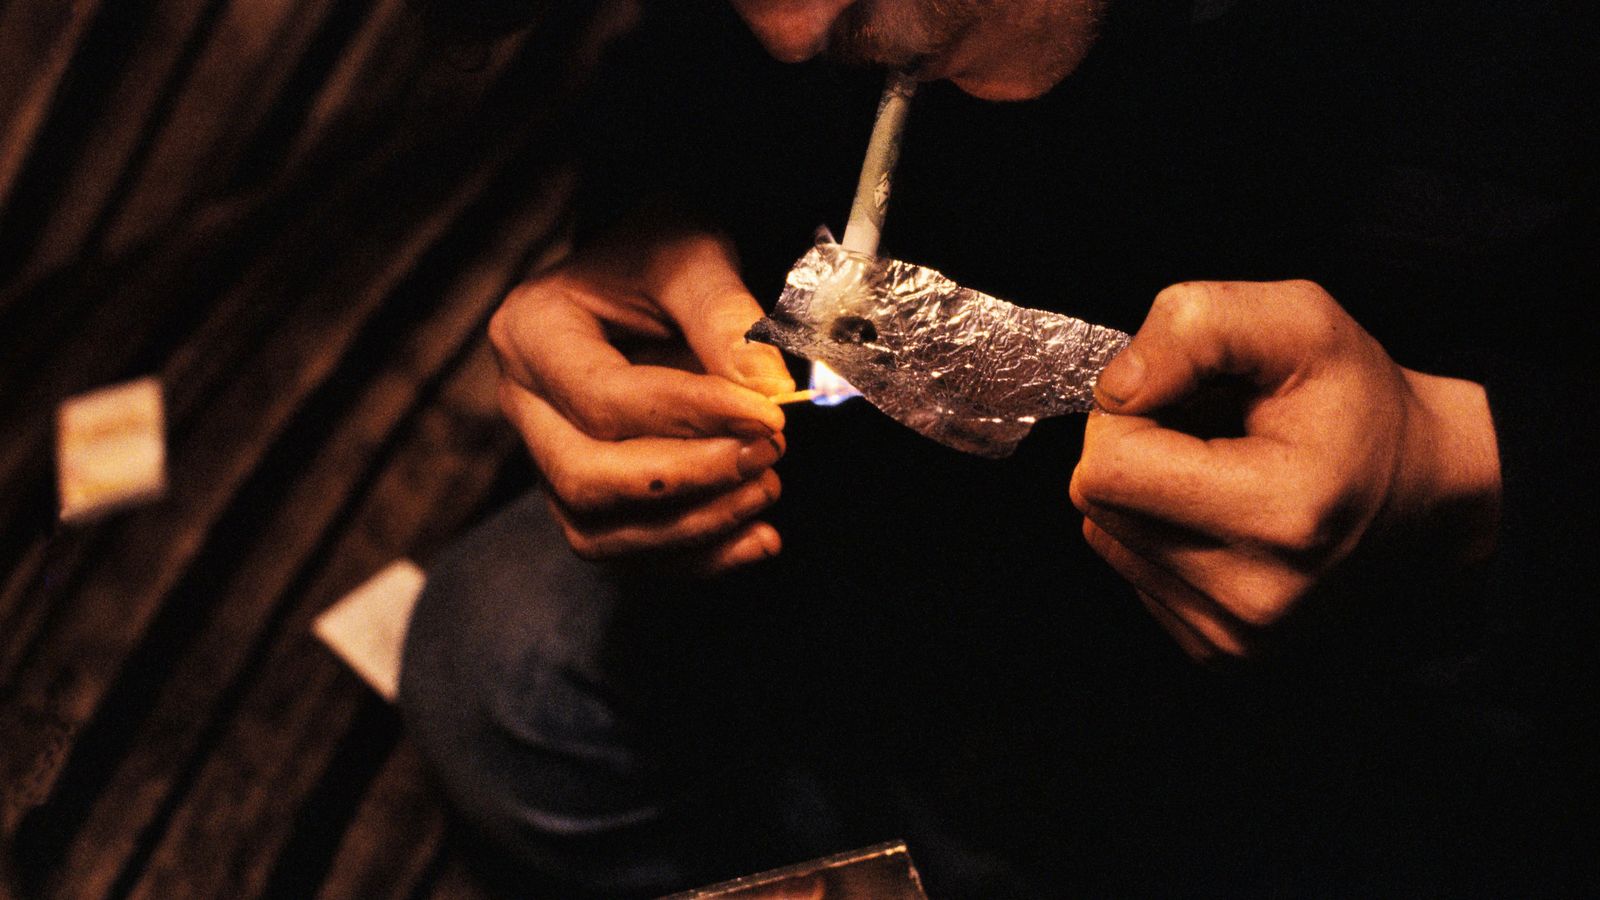 Foto: El consumo de heroína ha repuntado en países como EEUU o España. (Corbis)